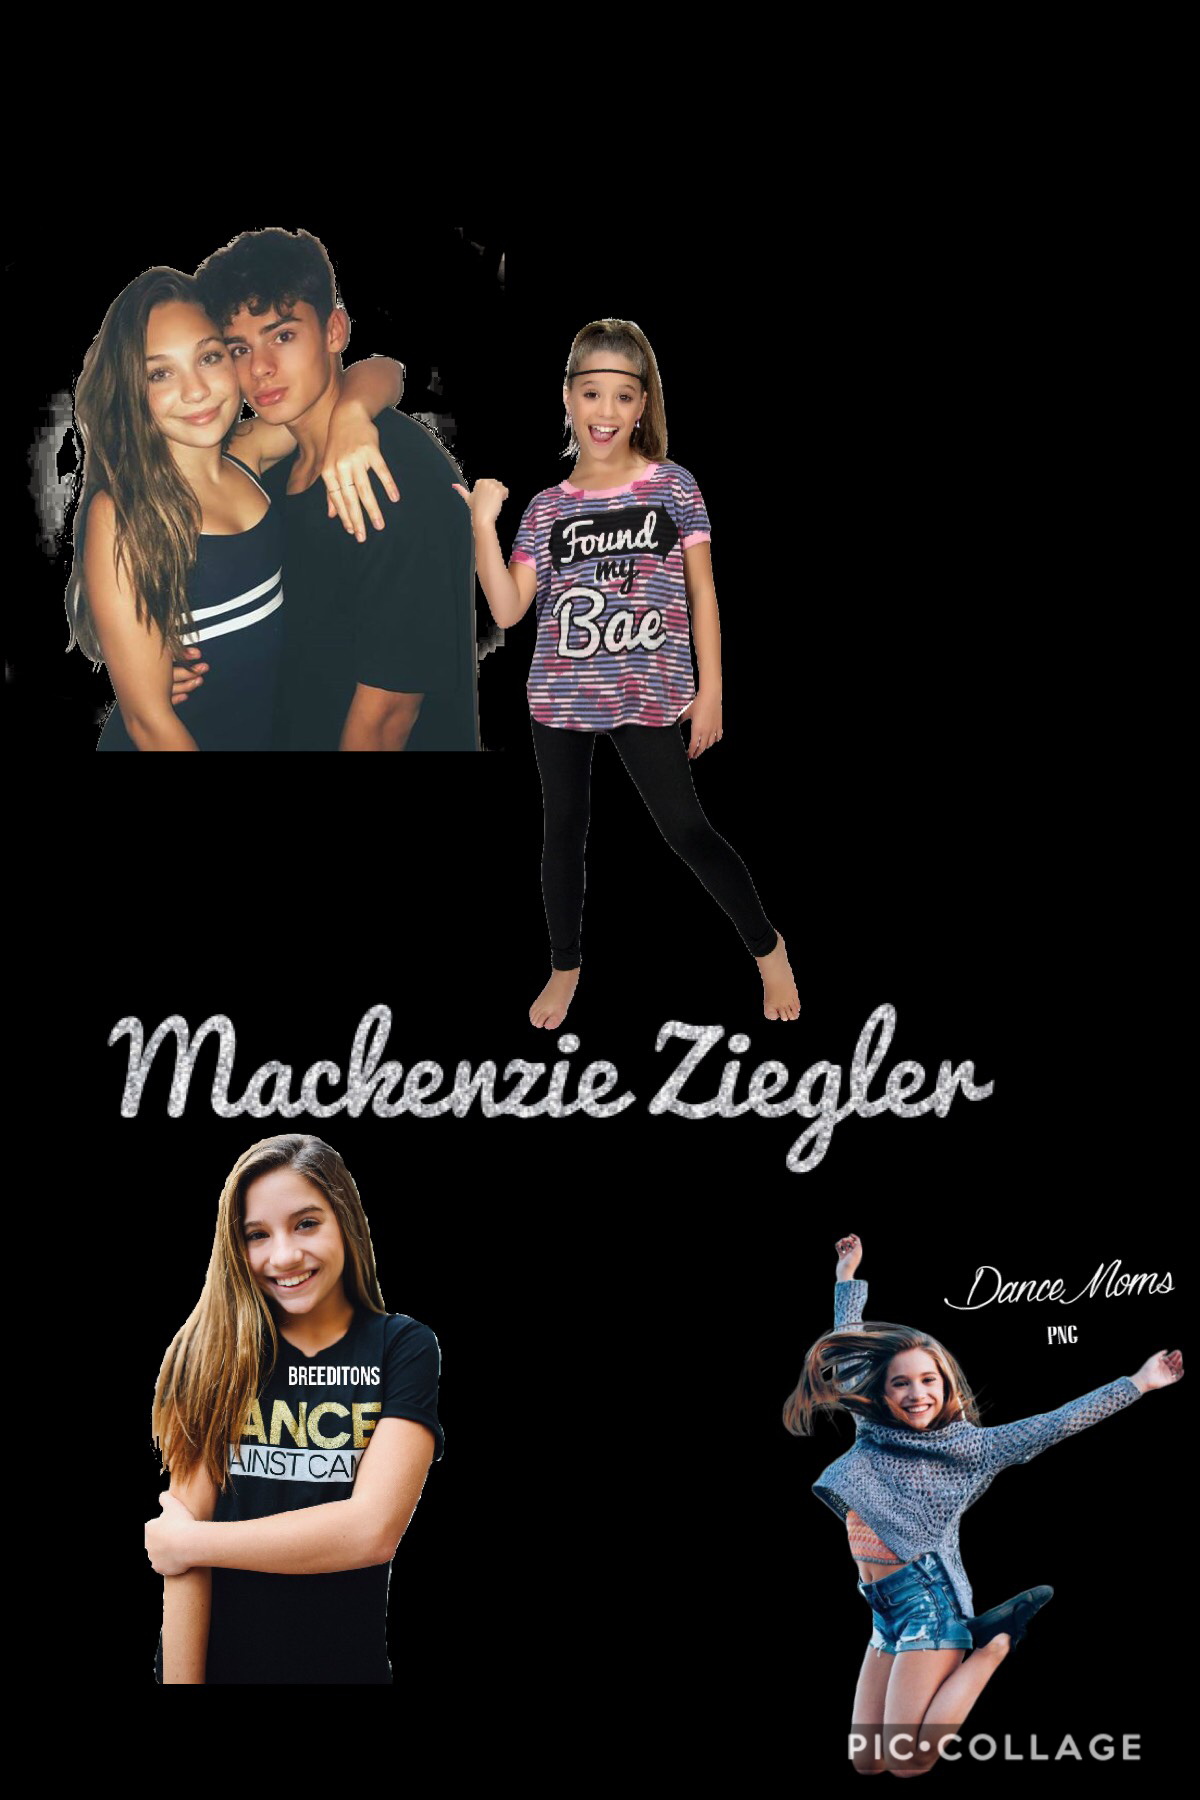 Mackenzie Ziegler ❤️❤️❤️❤️❤️❤️❤️❤️❤️